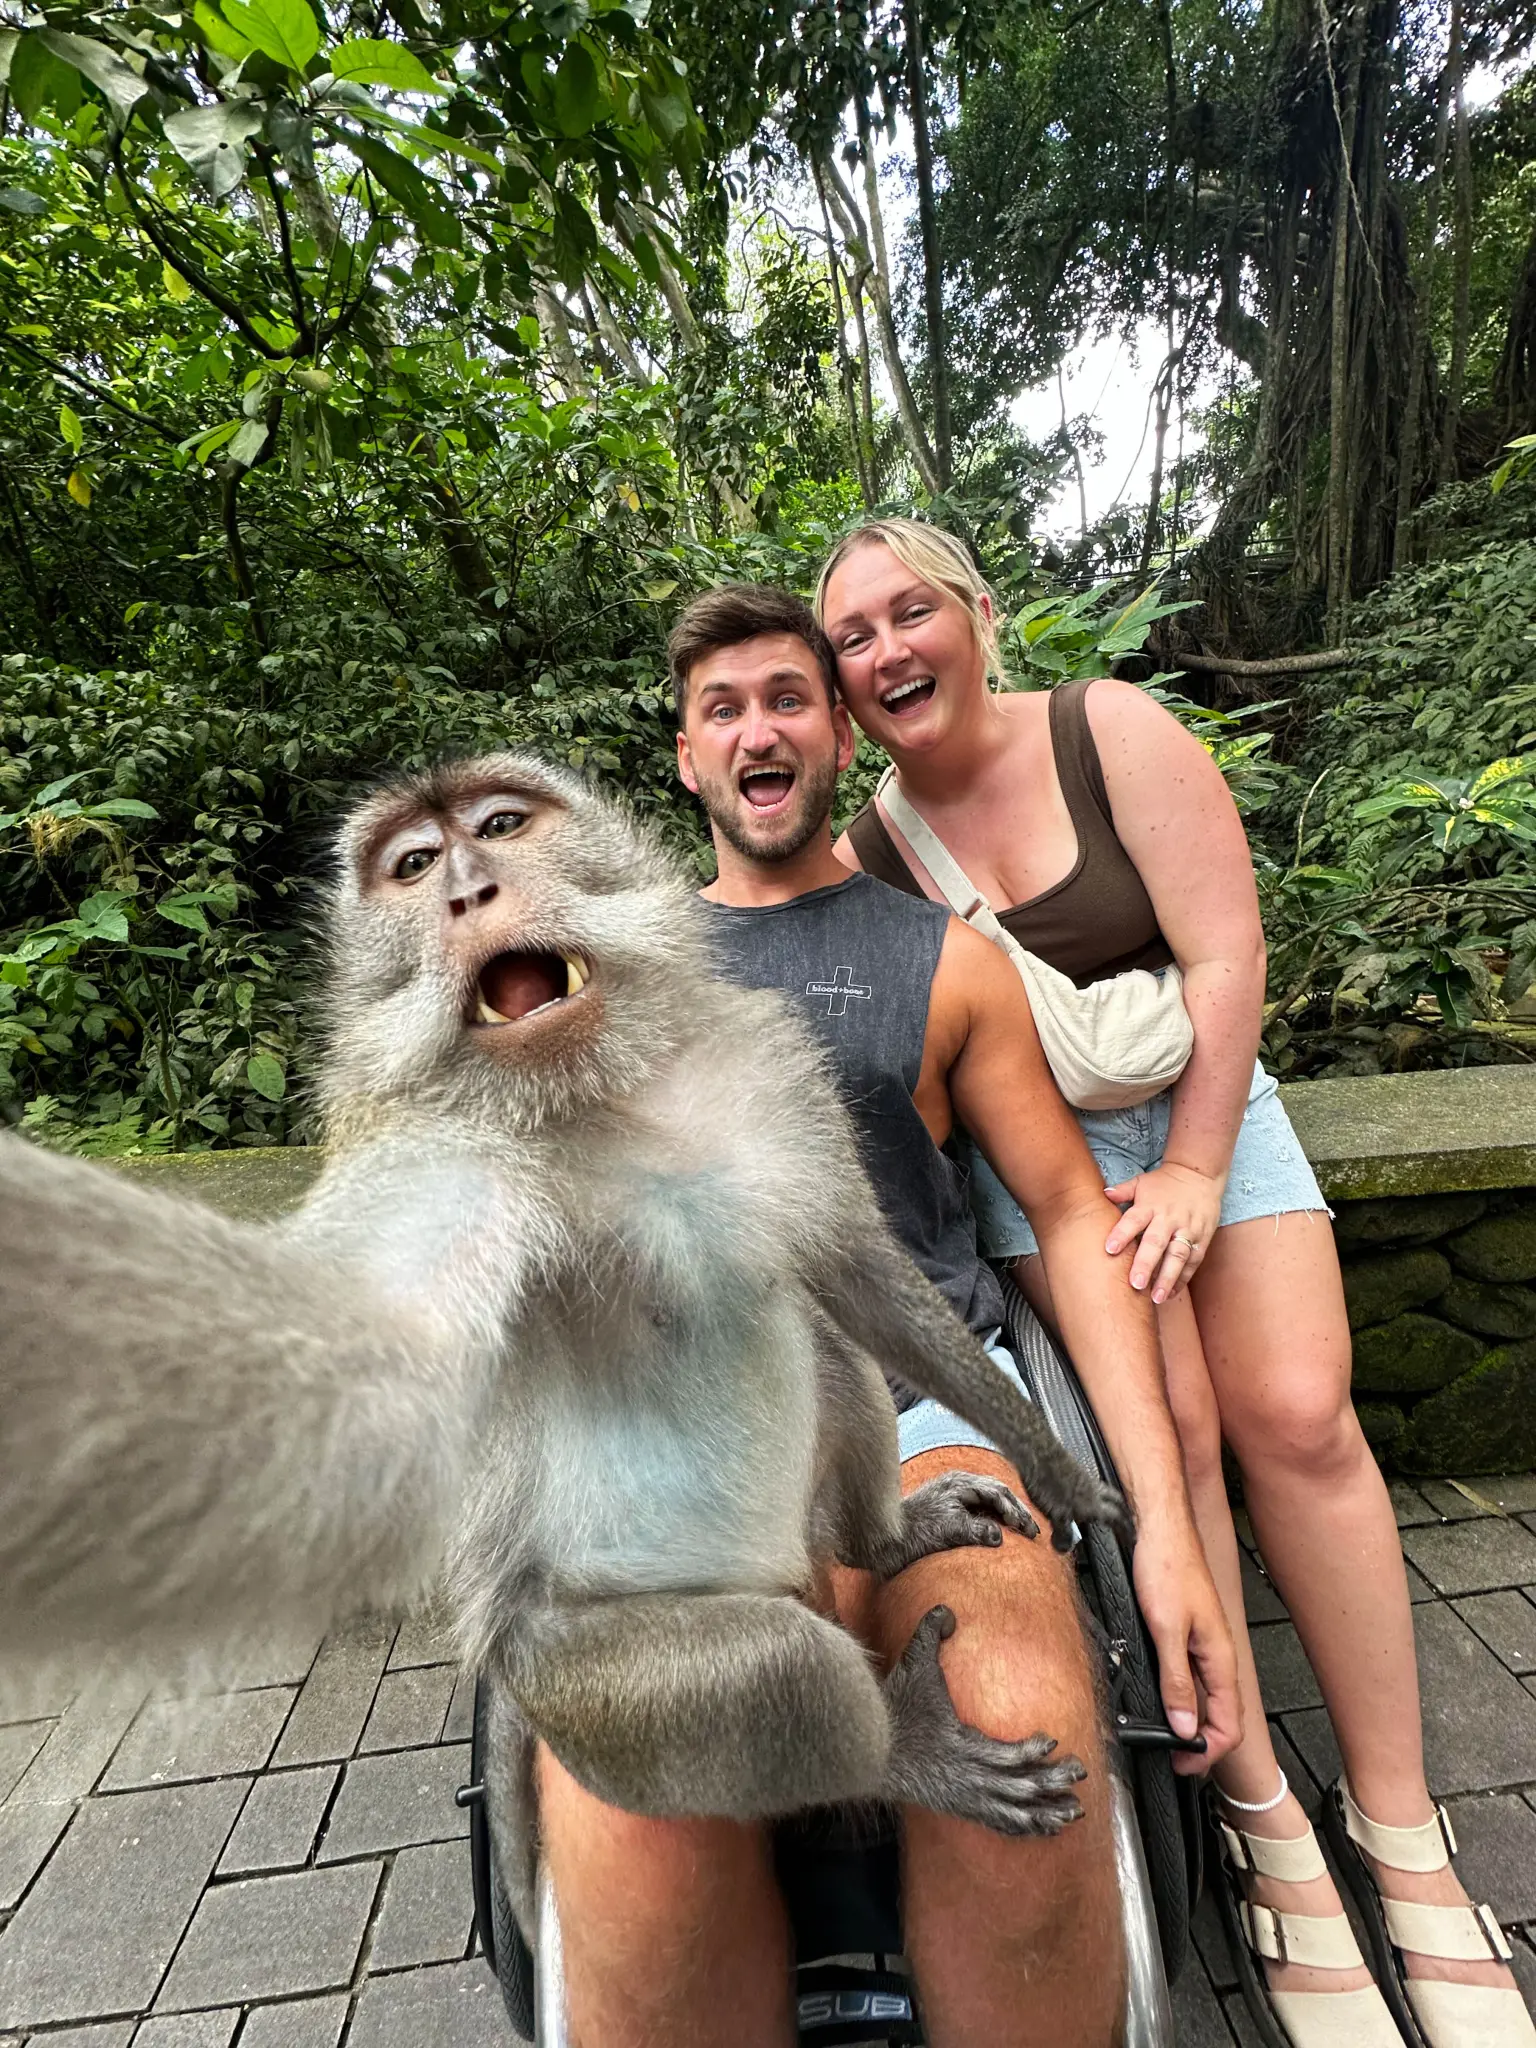 πίθηκος βγάζει selfie με τουρίστες στο μπαλί και «ρίχνει» το διαδίκτυο